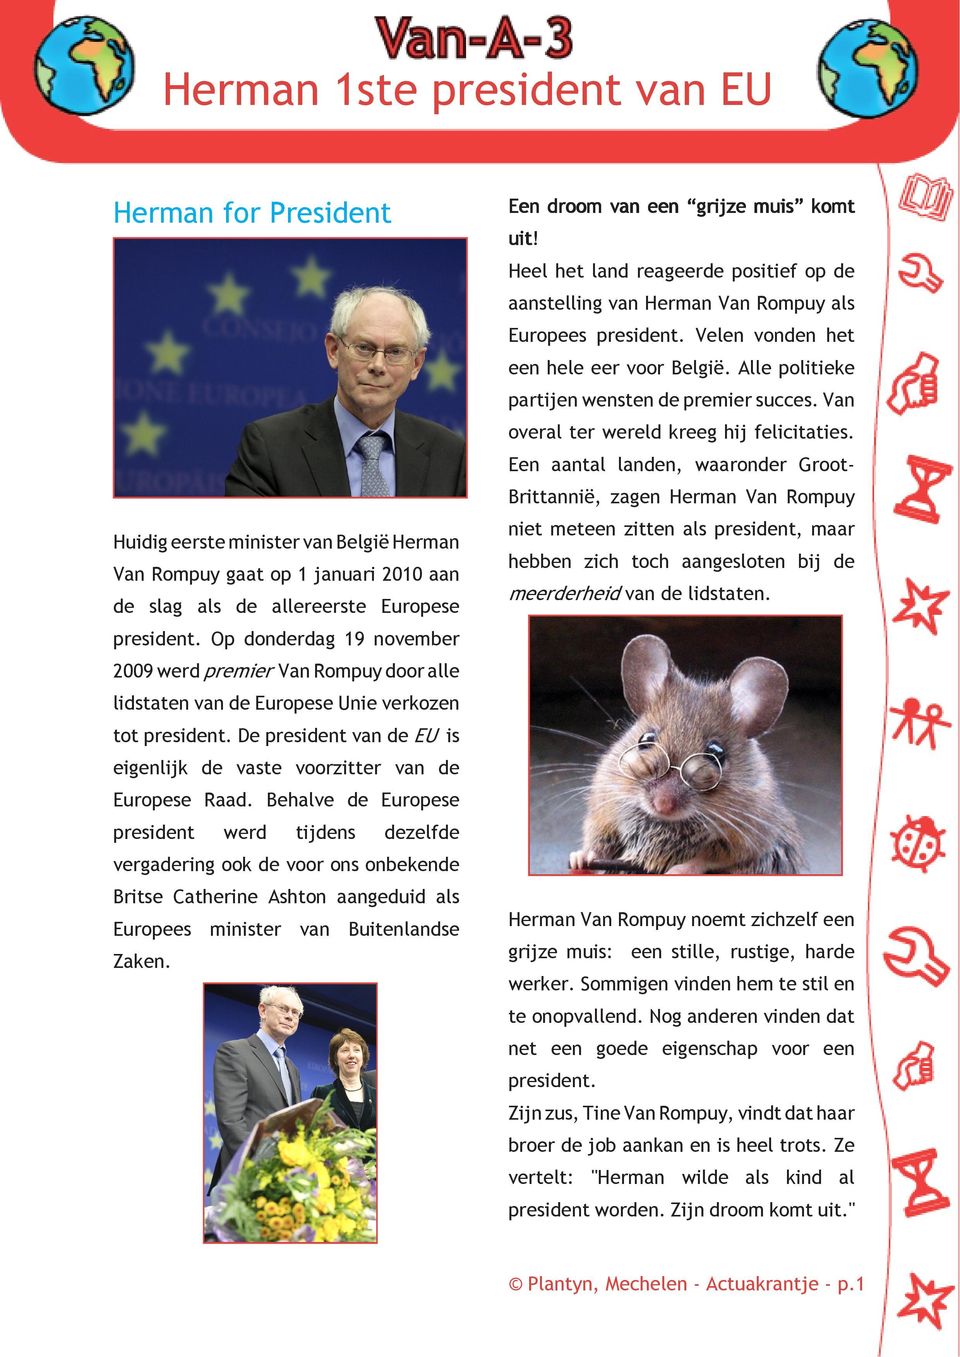 Een aantal landen, waaronder GrootBrittannië, zagen Herman Van Rompuy Huidig eerste minister van België Herman Van Rompuy gaat op 1 januari 2010 aan de slag als de allereerste Europese niet meteen